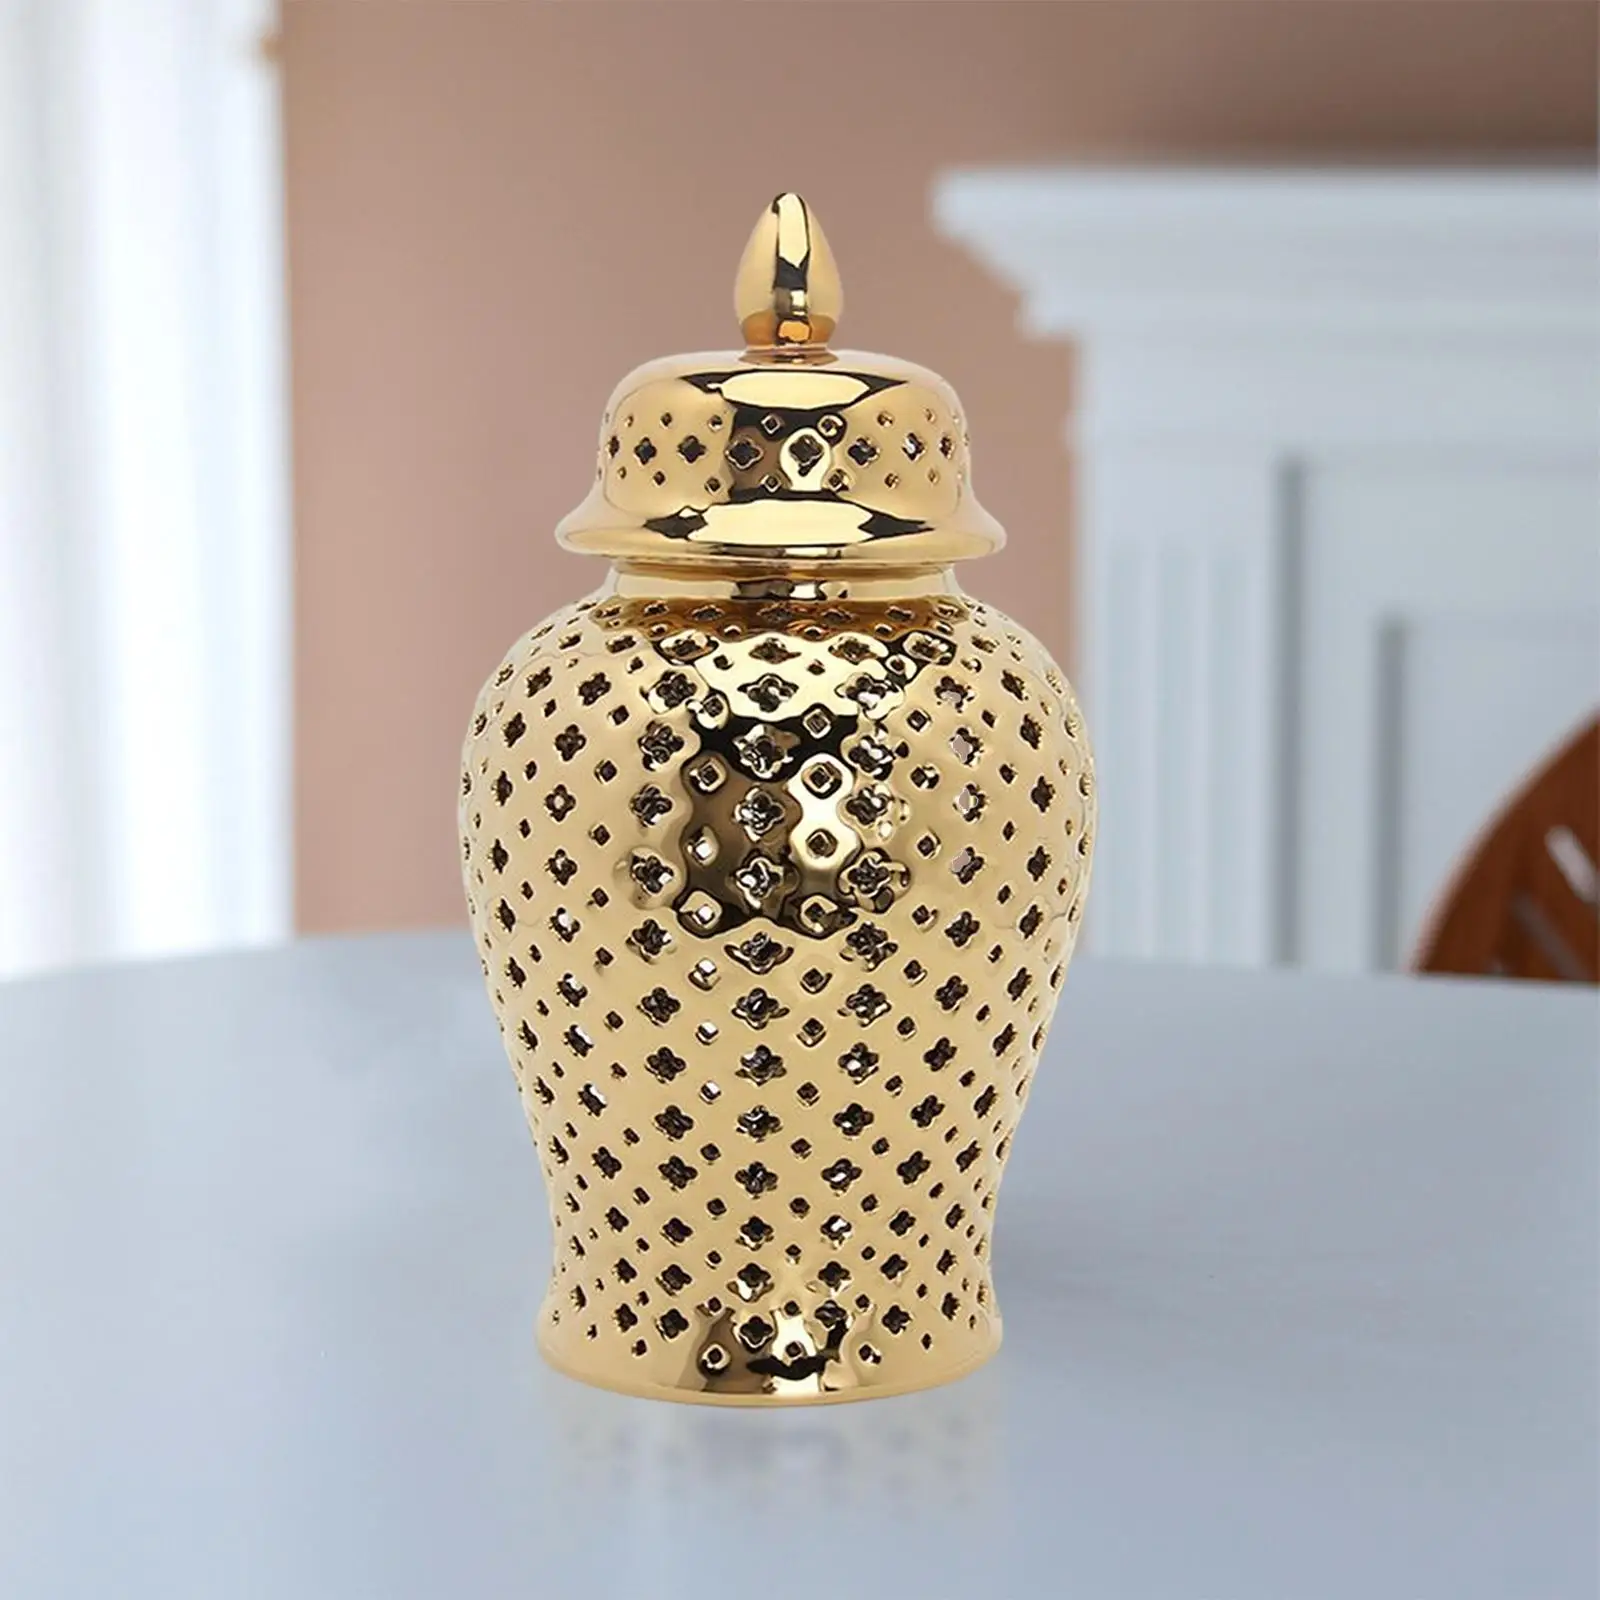 Ceramic Ginger Jar Ornament Flower Vase with Lid for Living Room Decoration